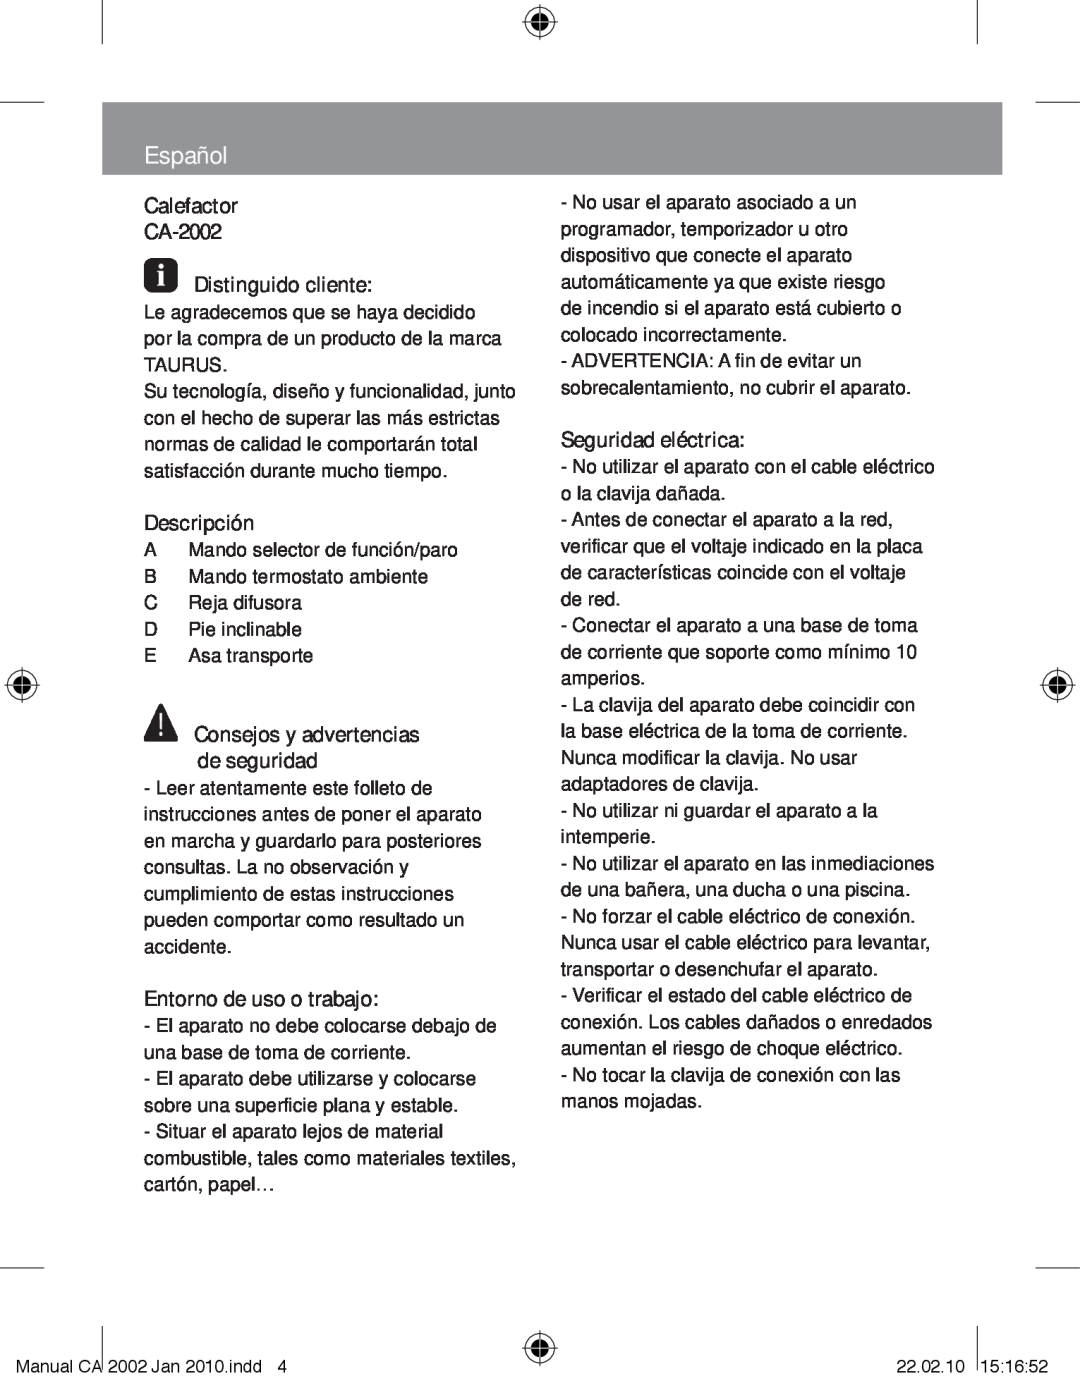 Taurus Group manual Español, Calefactor CA-2002 Distinguido cliente, Descripción, Entorno de uso o trabajo 